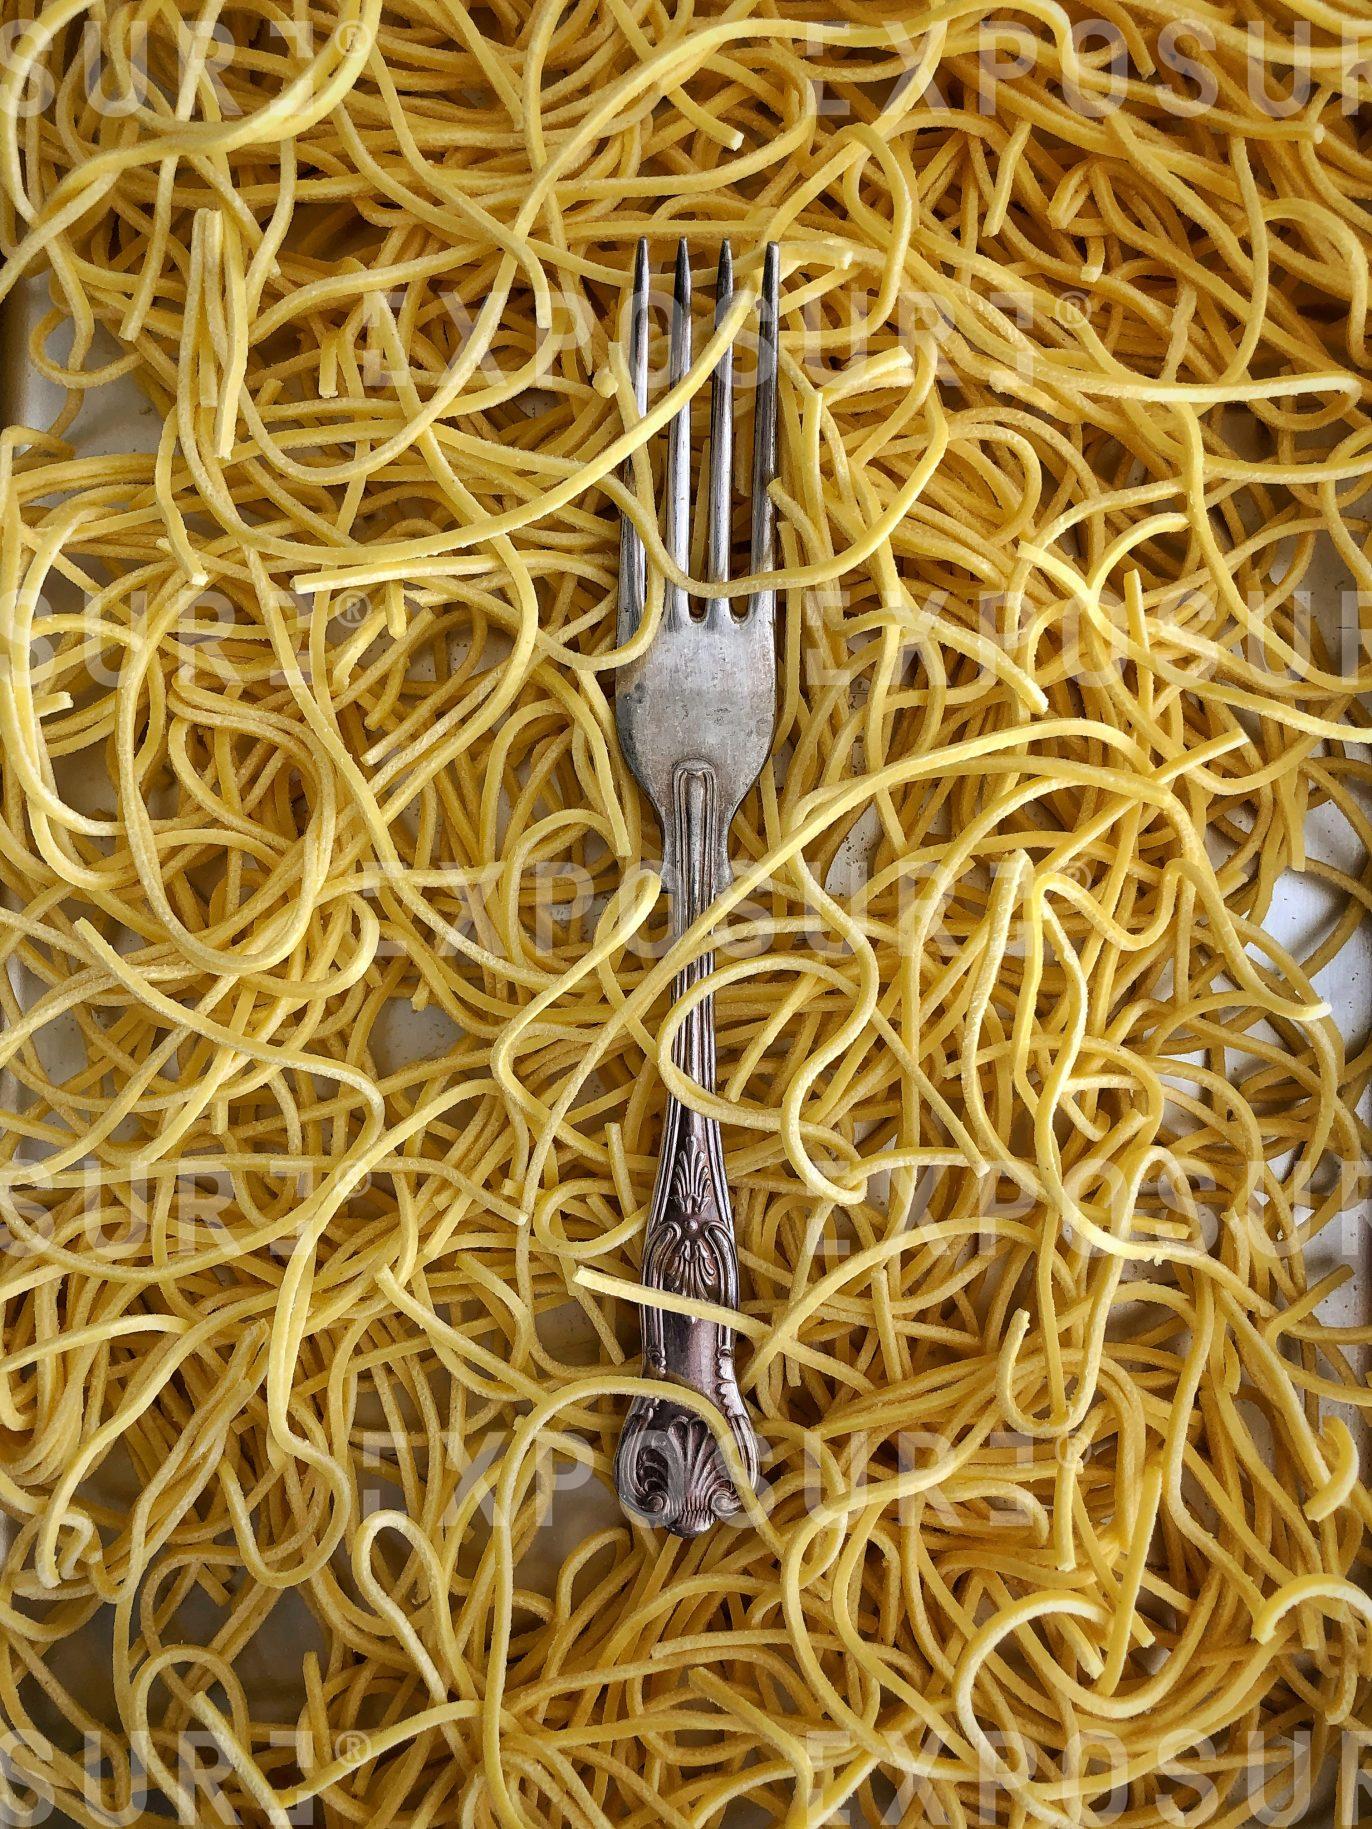 Fresh spaghetti